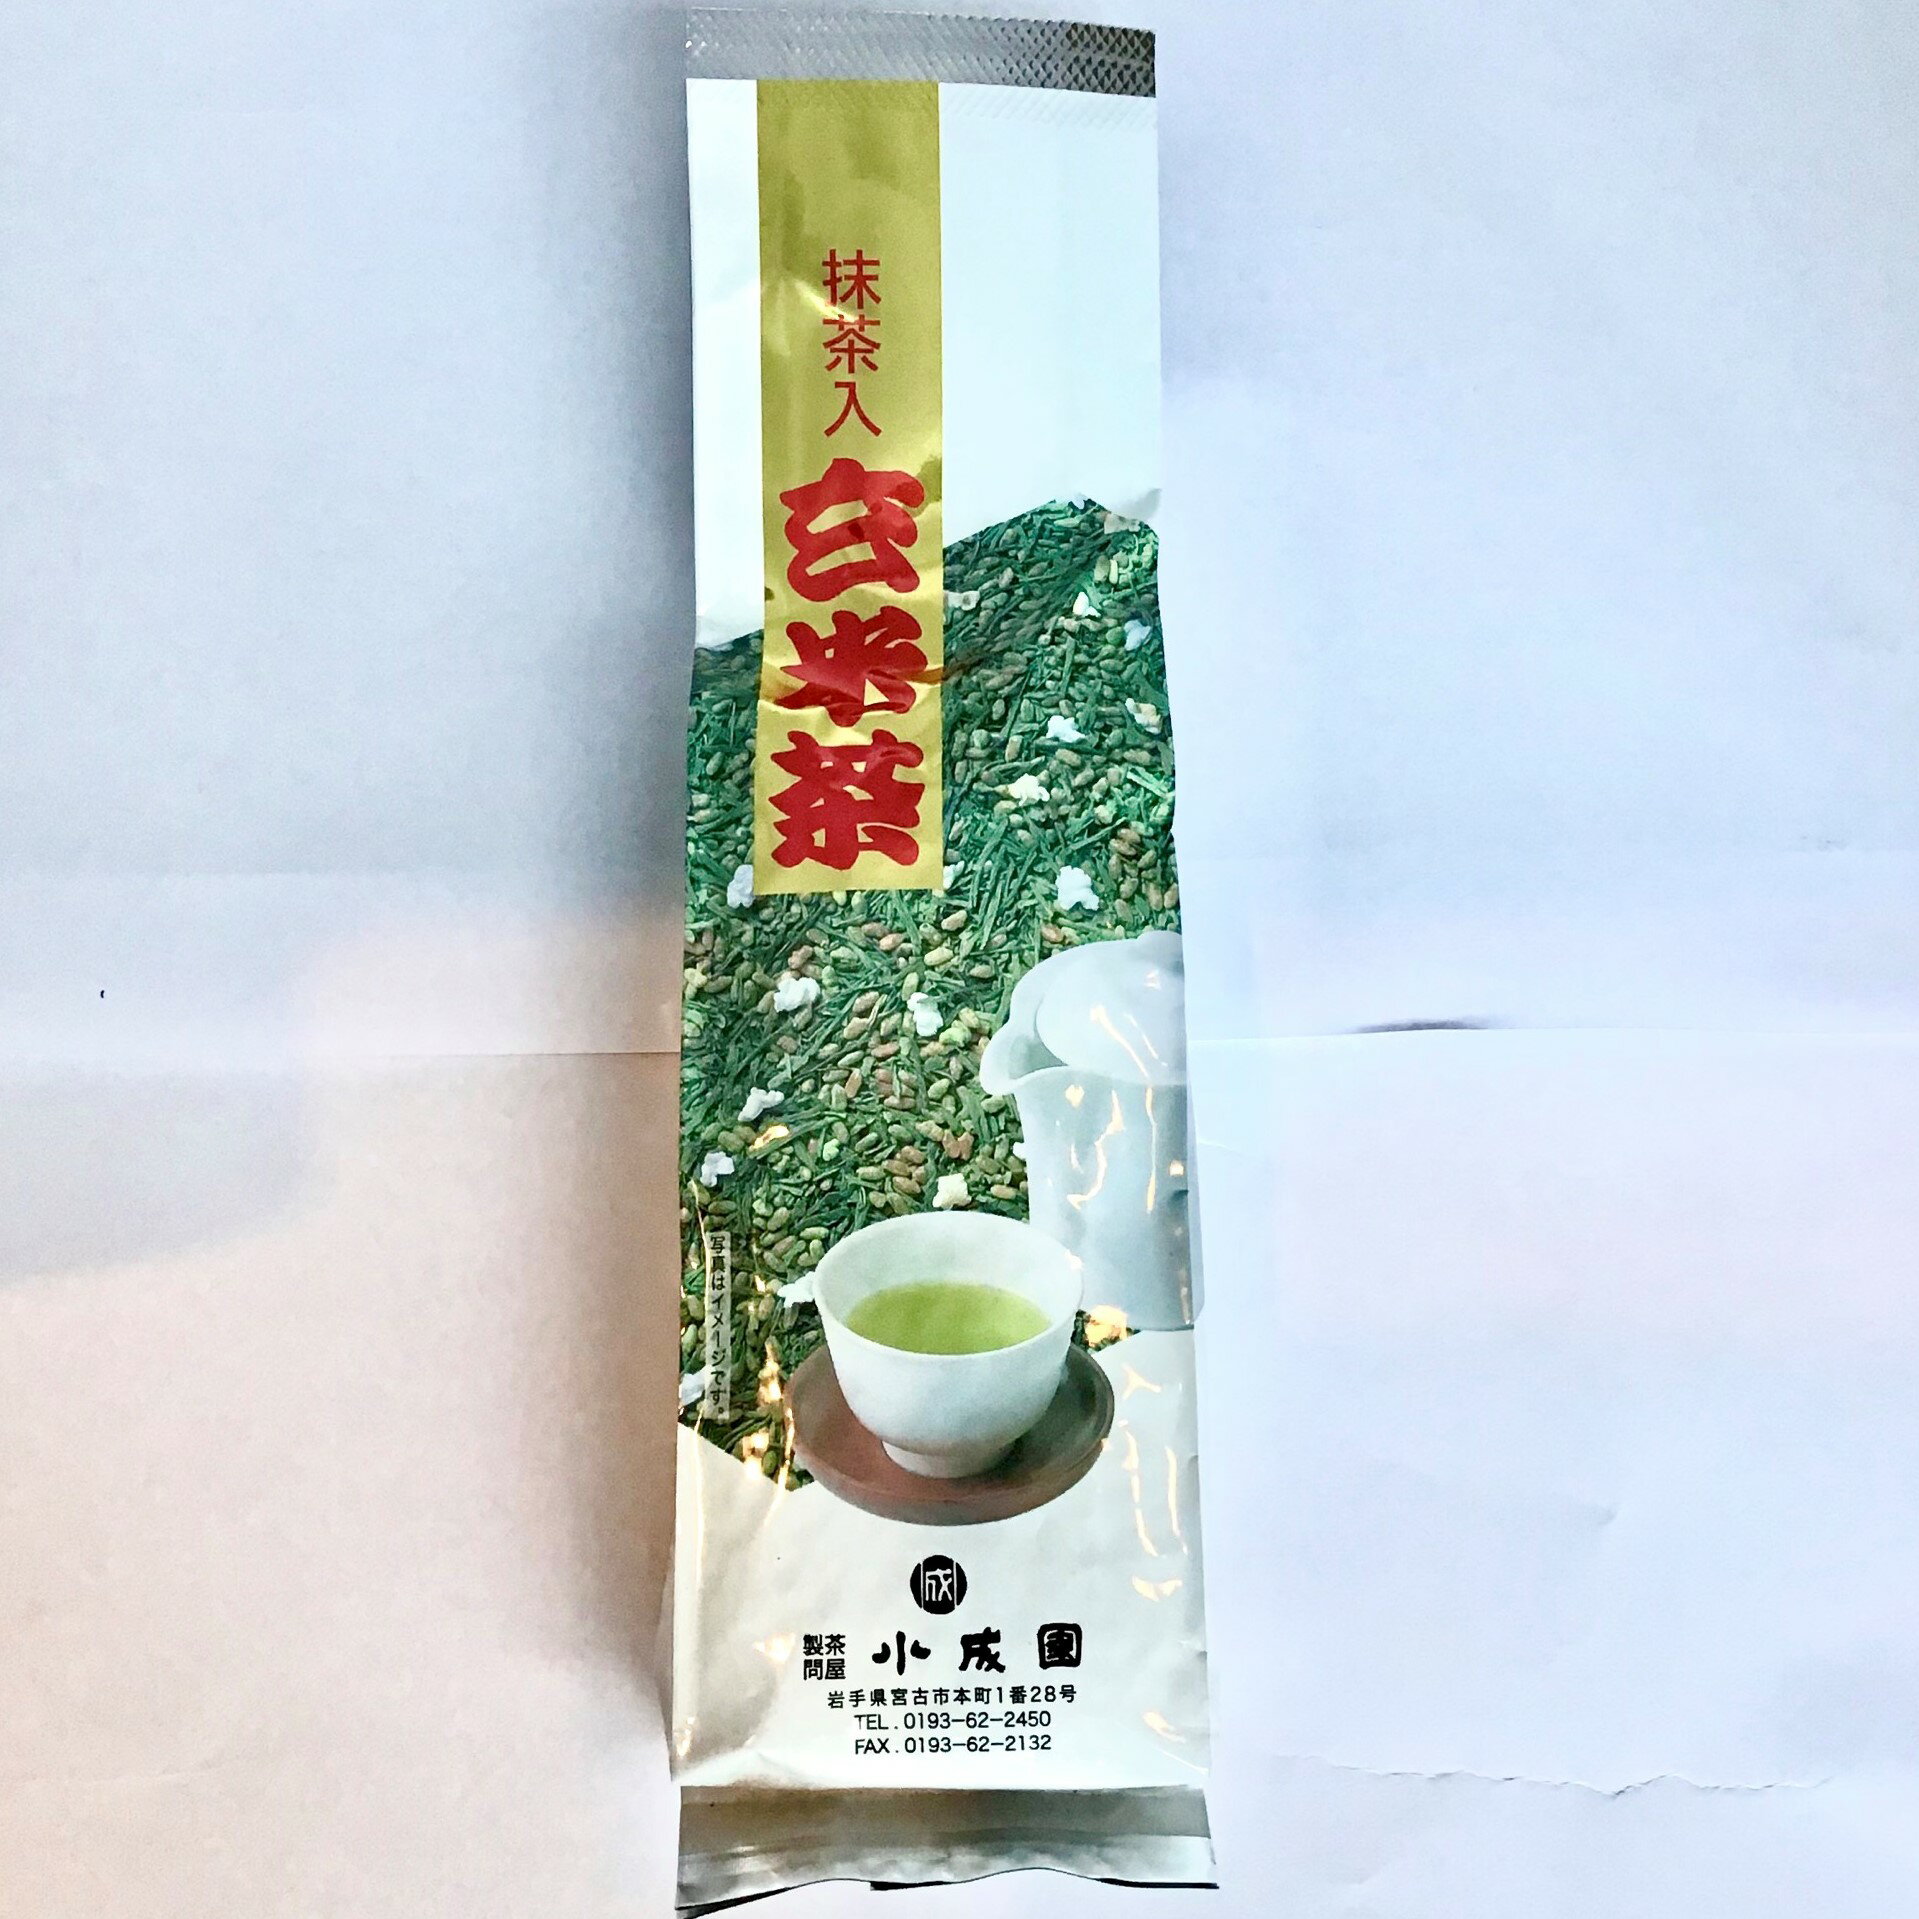 【煎茶 祝/煎茶祝】【茶 日本茶】日本茶 抹茶入り玄米茶